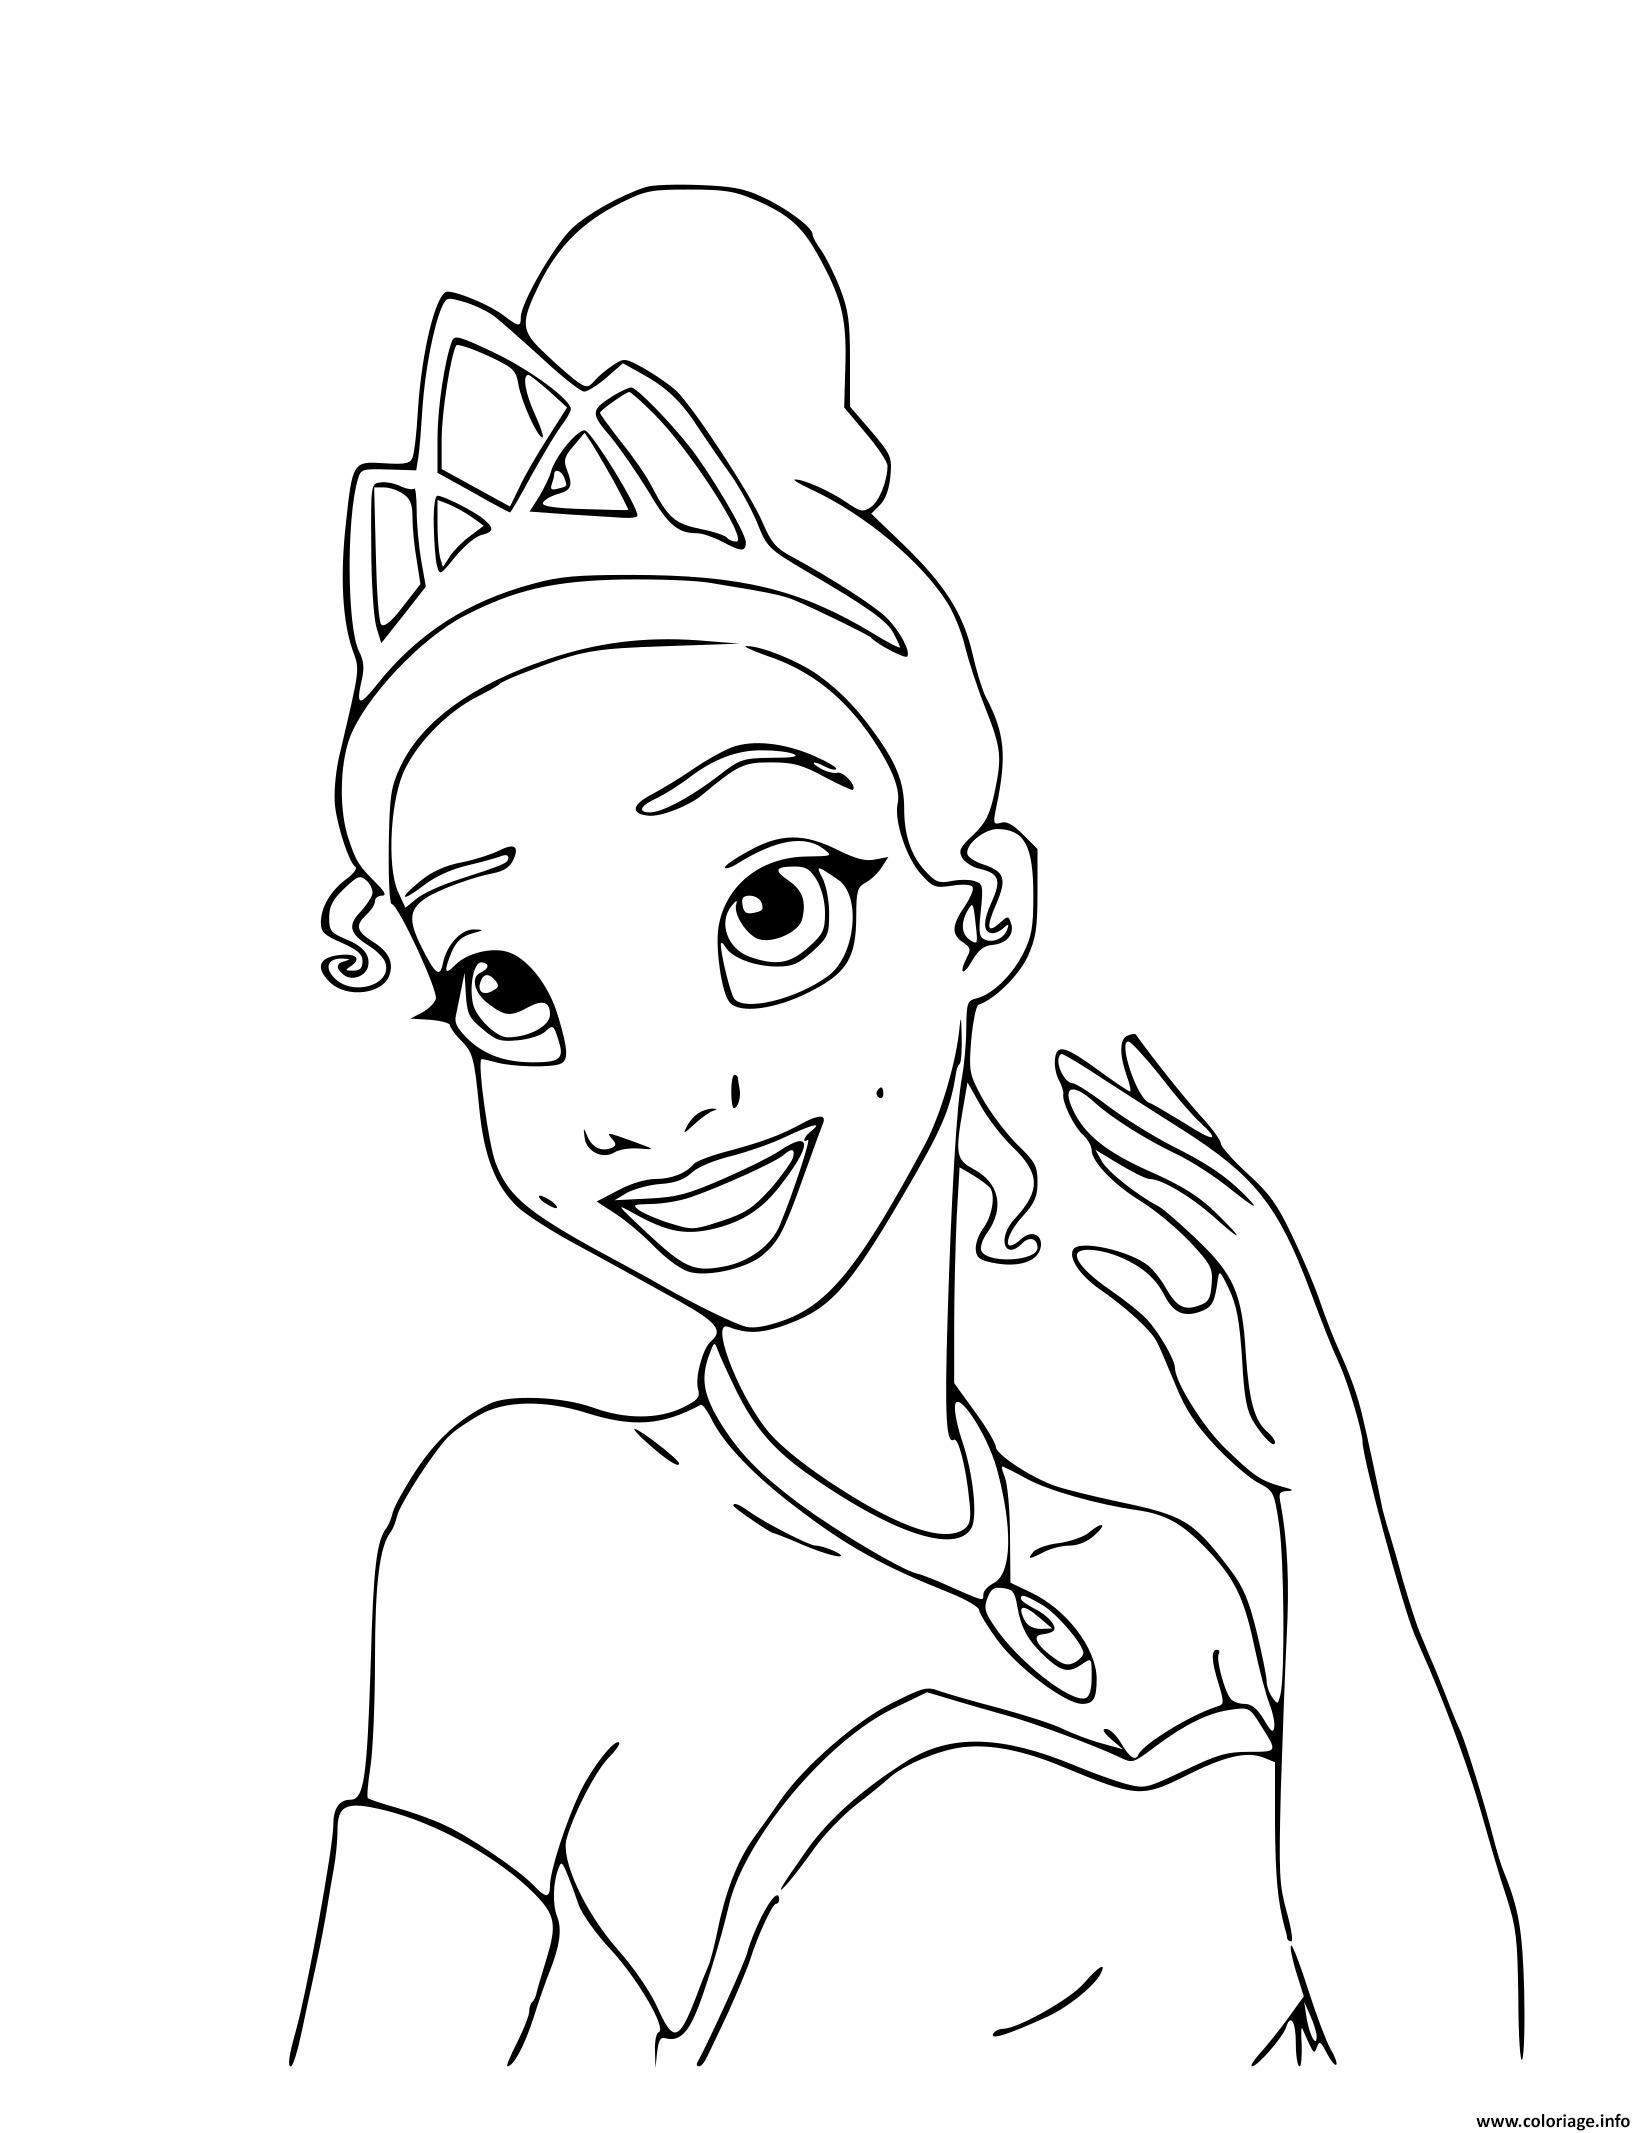 Dessin Tiana premiere princesse Disney afro americaine dans le film La Princesse et la Grenouille Coloriage Gratuit à Imprimer